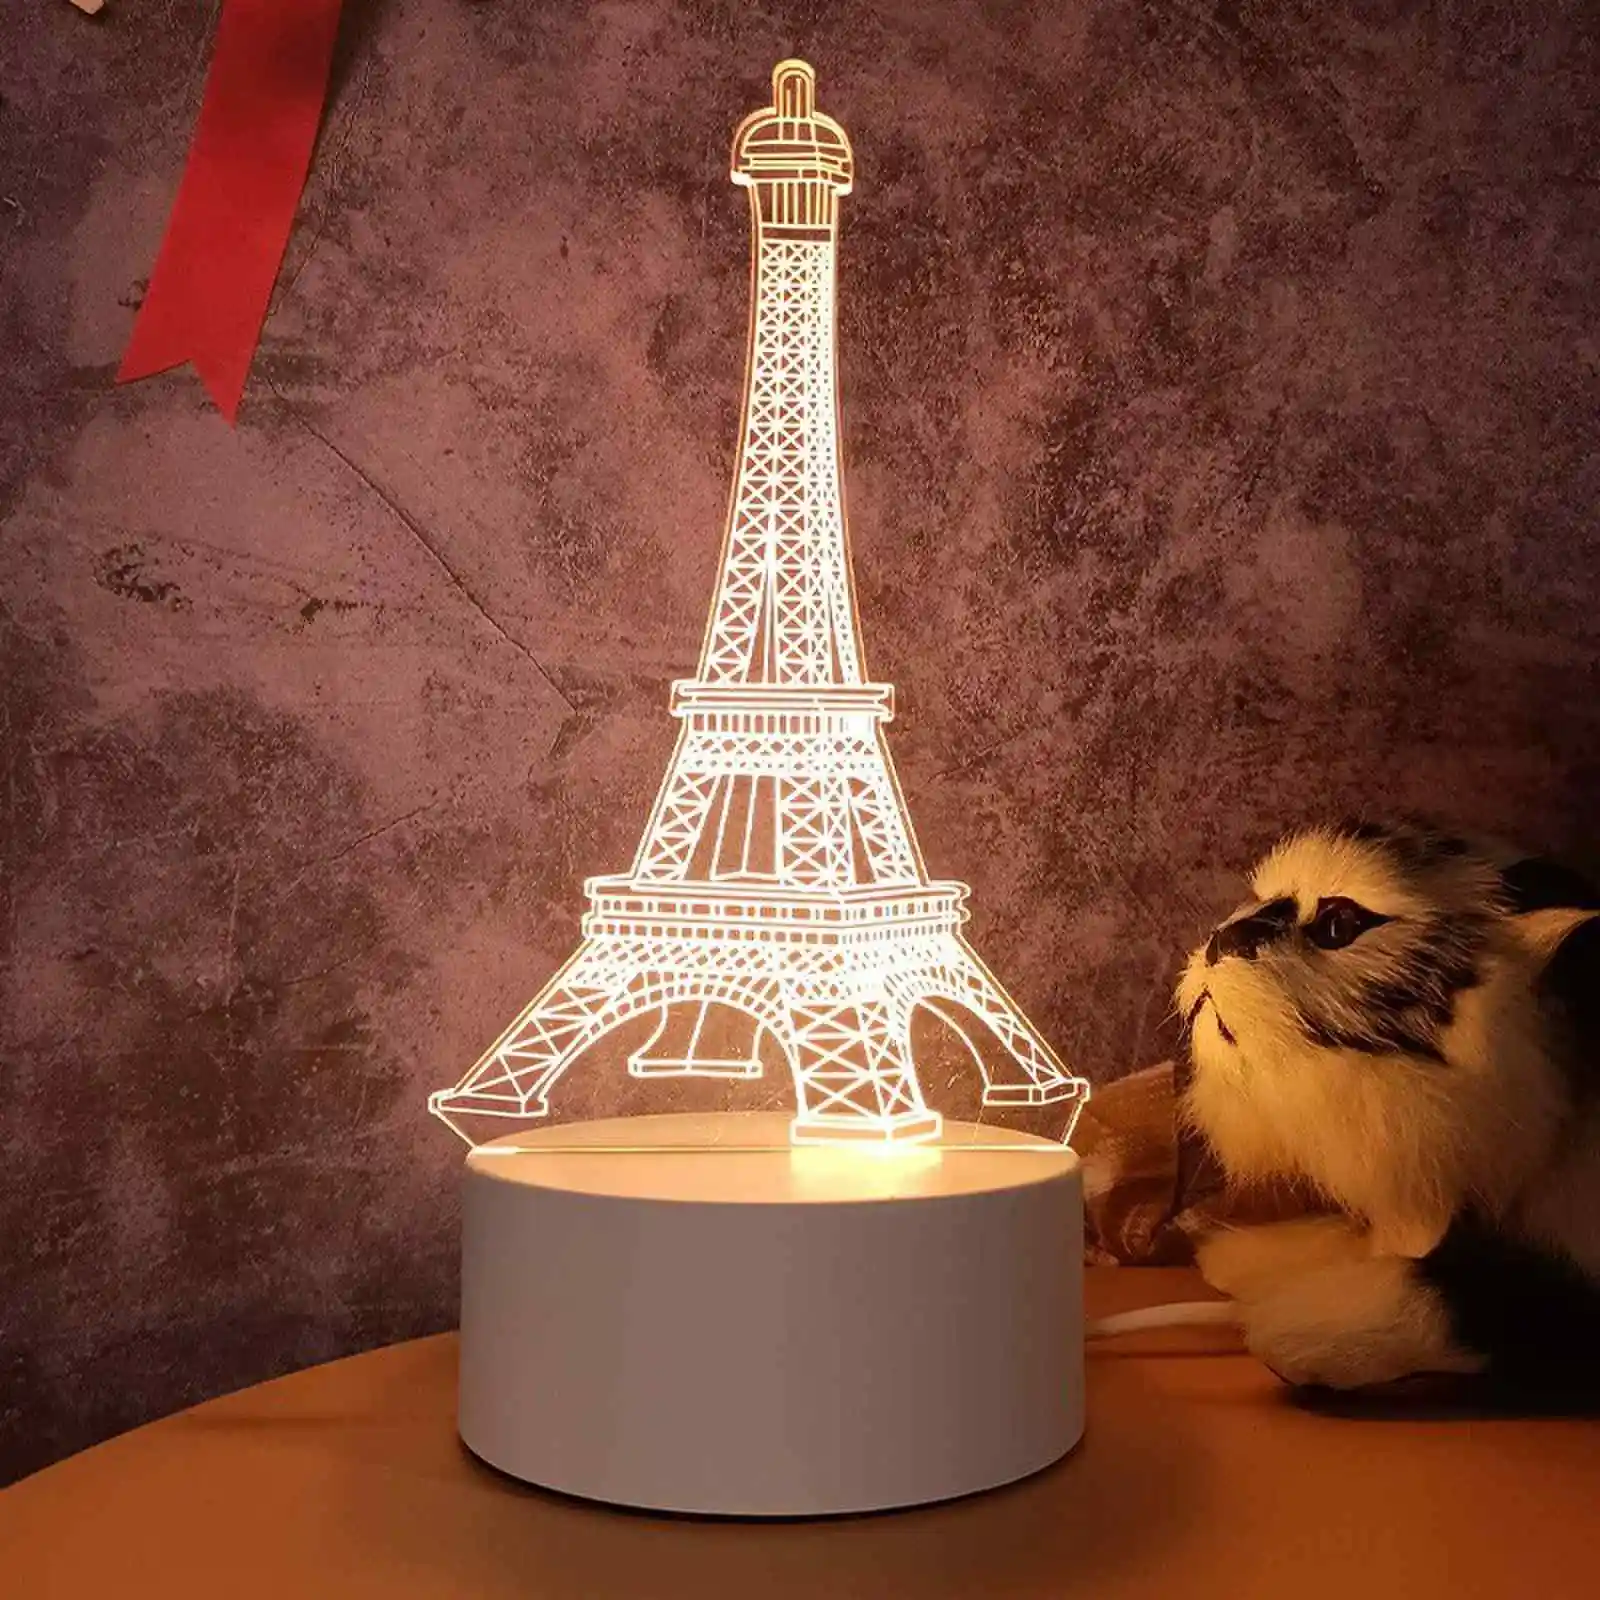 Prodotti di tendenza 2023 nuovi arrivi set di regali Design personalizzato lampada da notte a Led luminosa bianca prodotti unici gadget elettronici